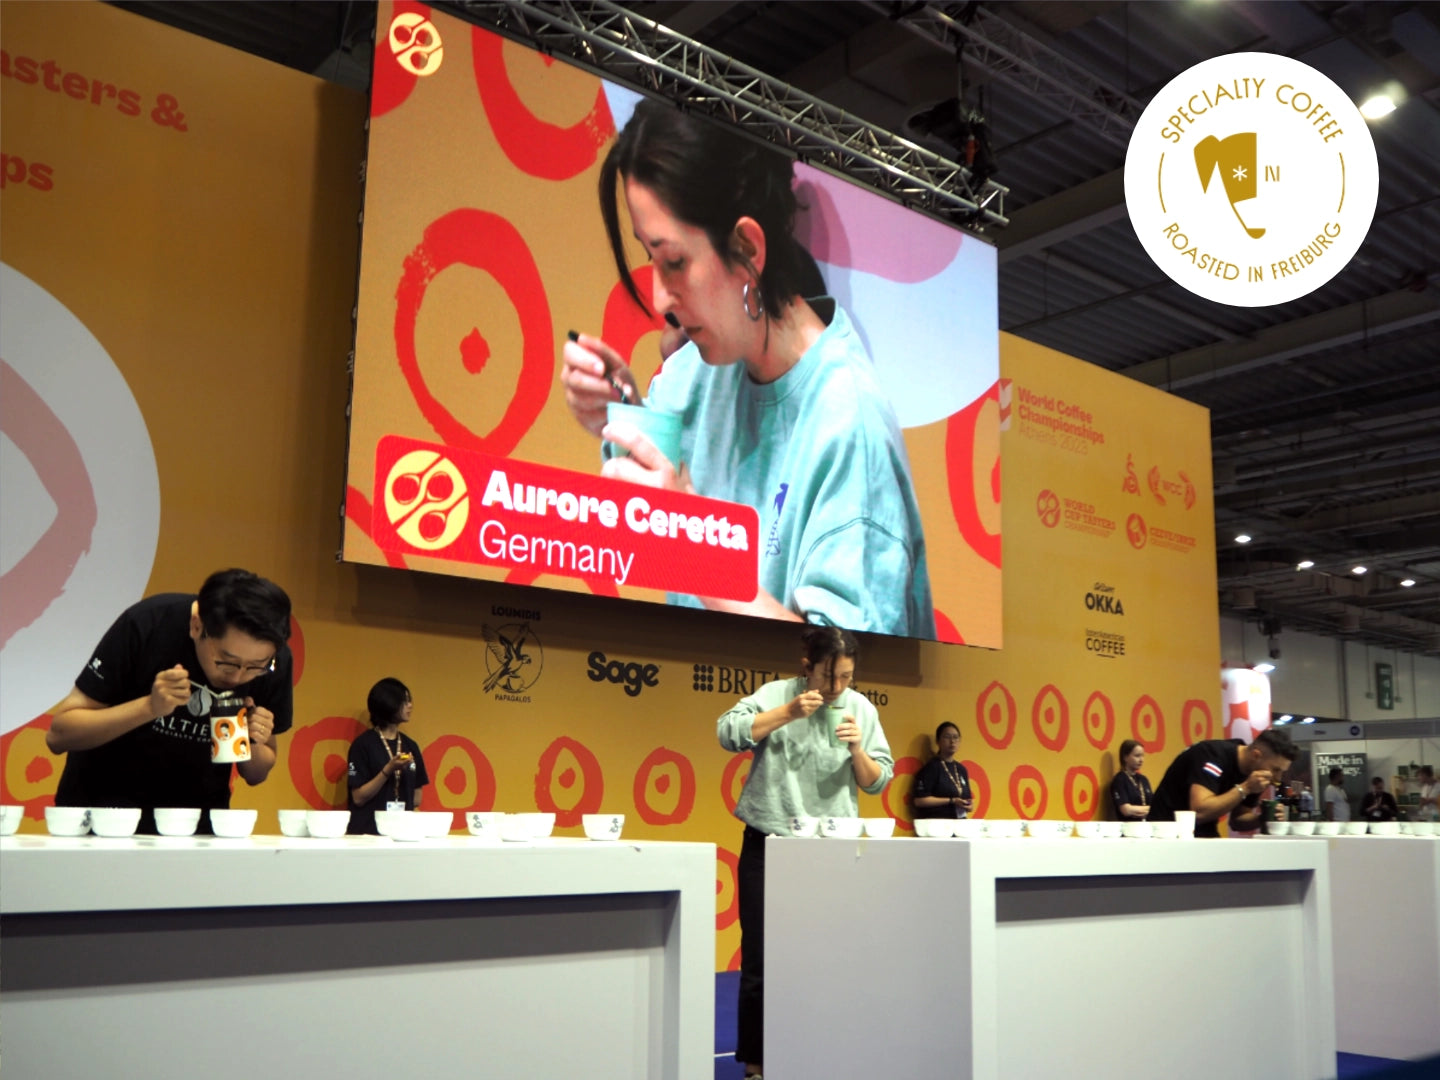 Titelbild zum Blogartikel über die World Coffee Championships. Zu sehen ist Inhaberin der Günter Coffee Roasters Aurore Ceretta bei ihrem Auftritt bei den World Cup Tasters Championships.